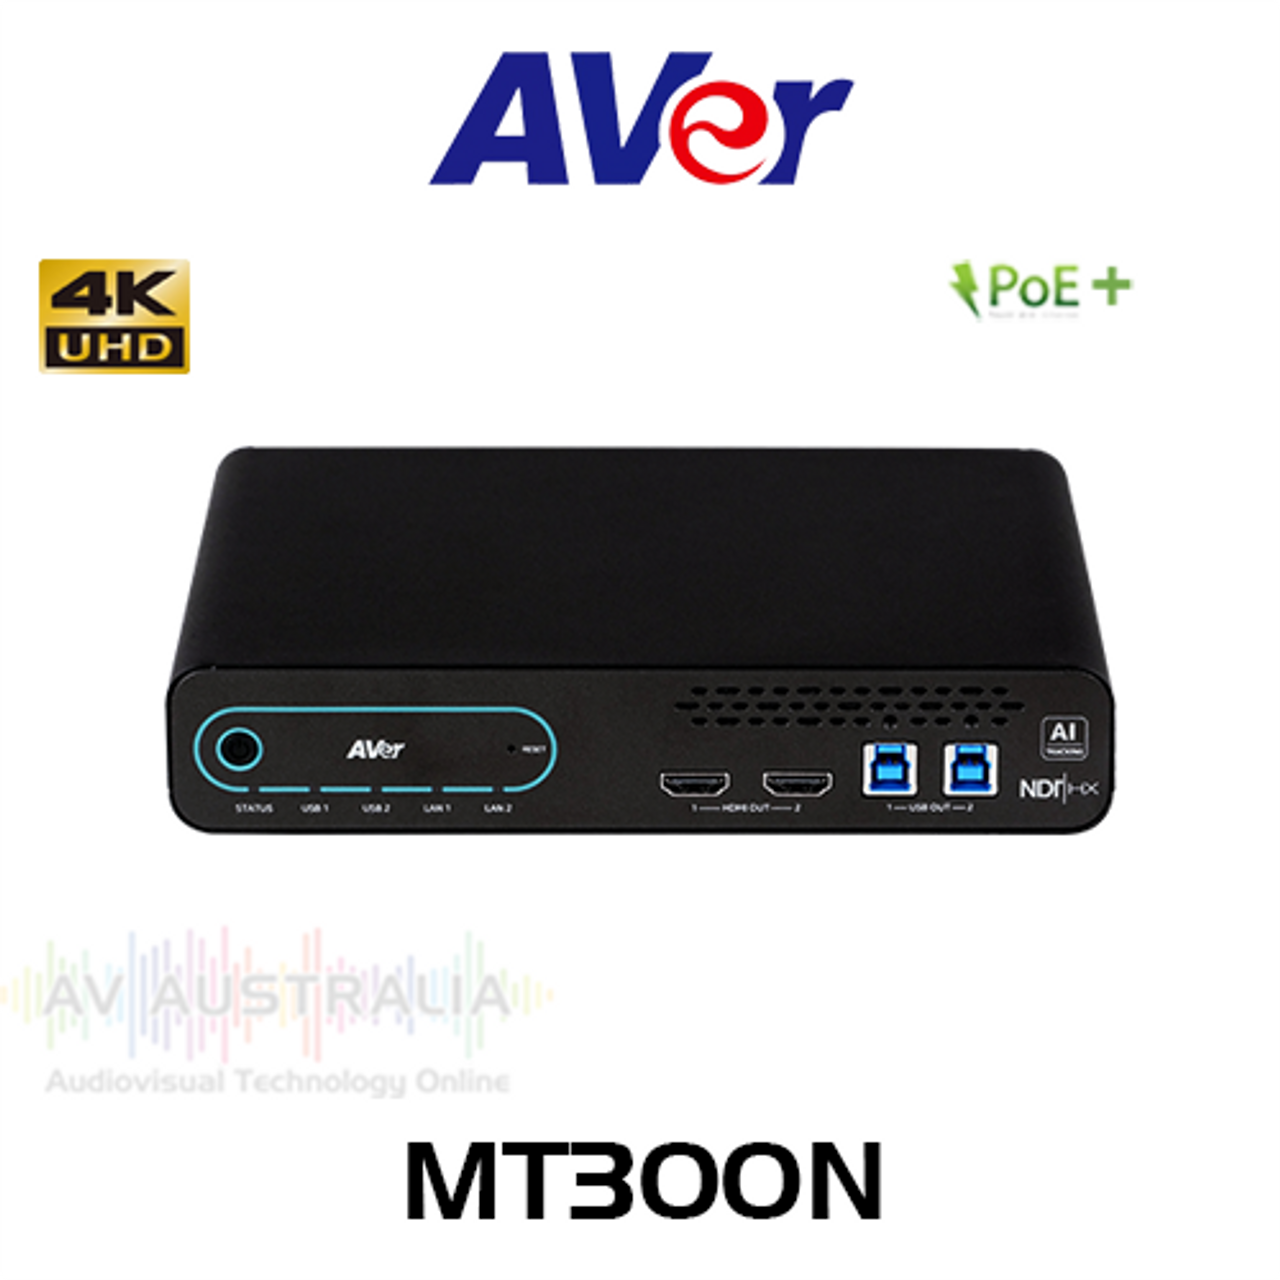 Aver MT300N NDI Matrix Tracking Box